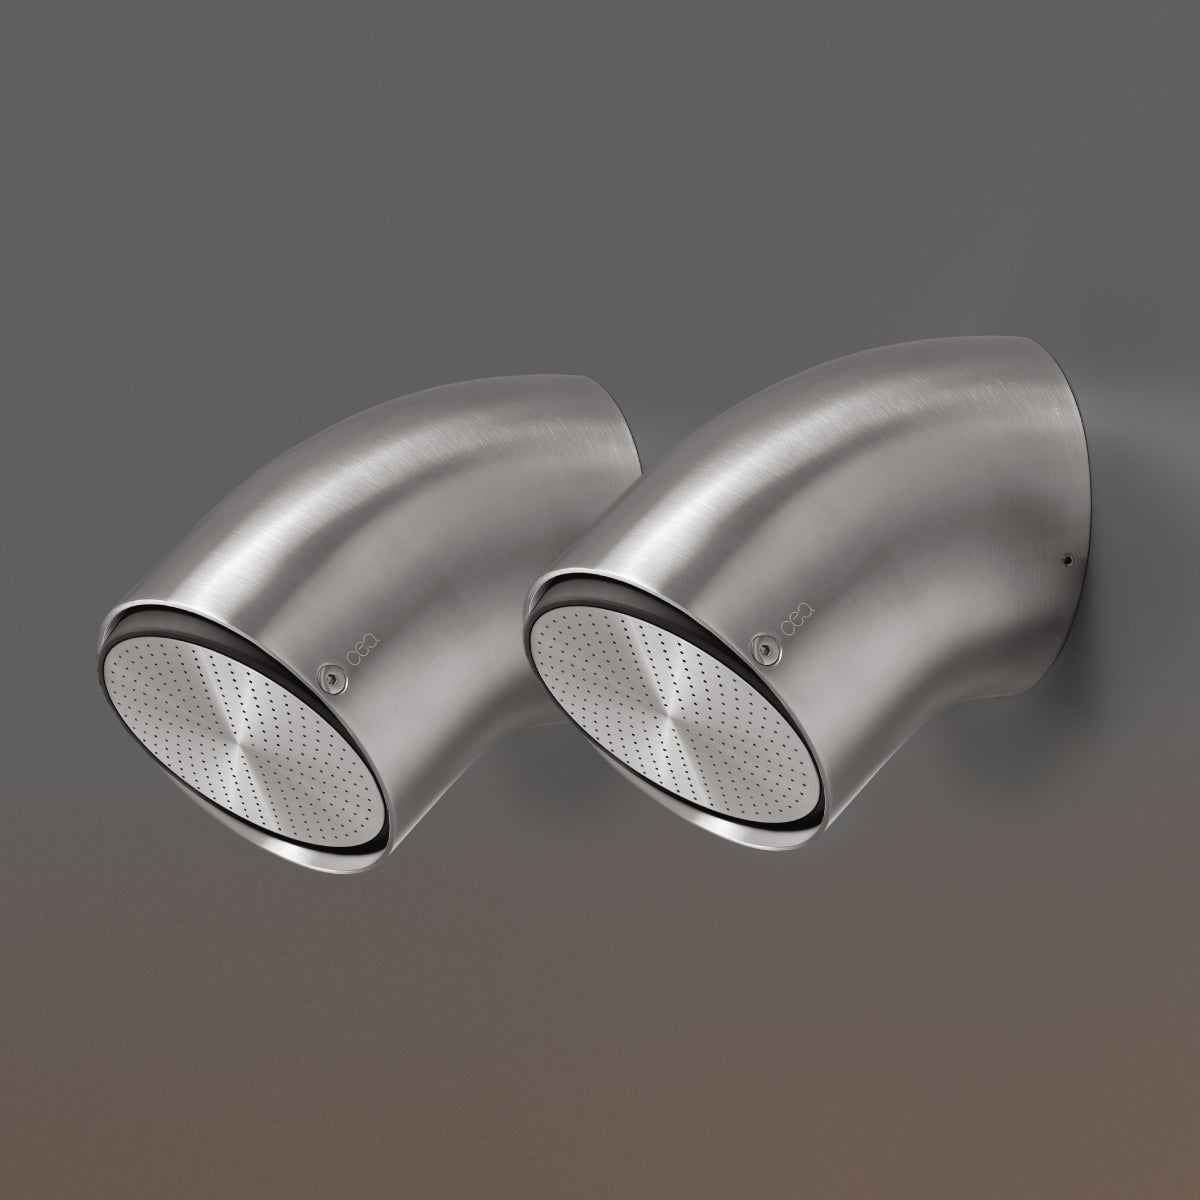 Ceadesign FREE IDEAS COLLECTION -Composizione di soffioni doccia orientabili in acciaio con getto a pioggia areato- FRE180+INC13